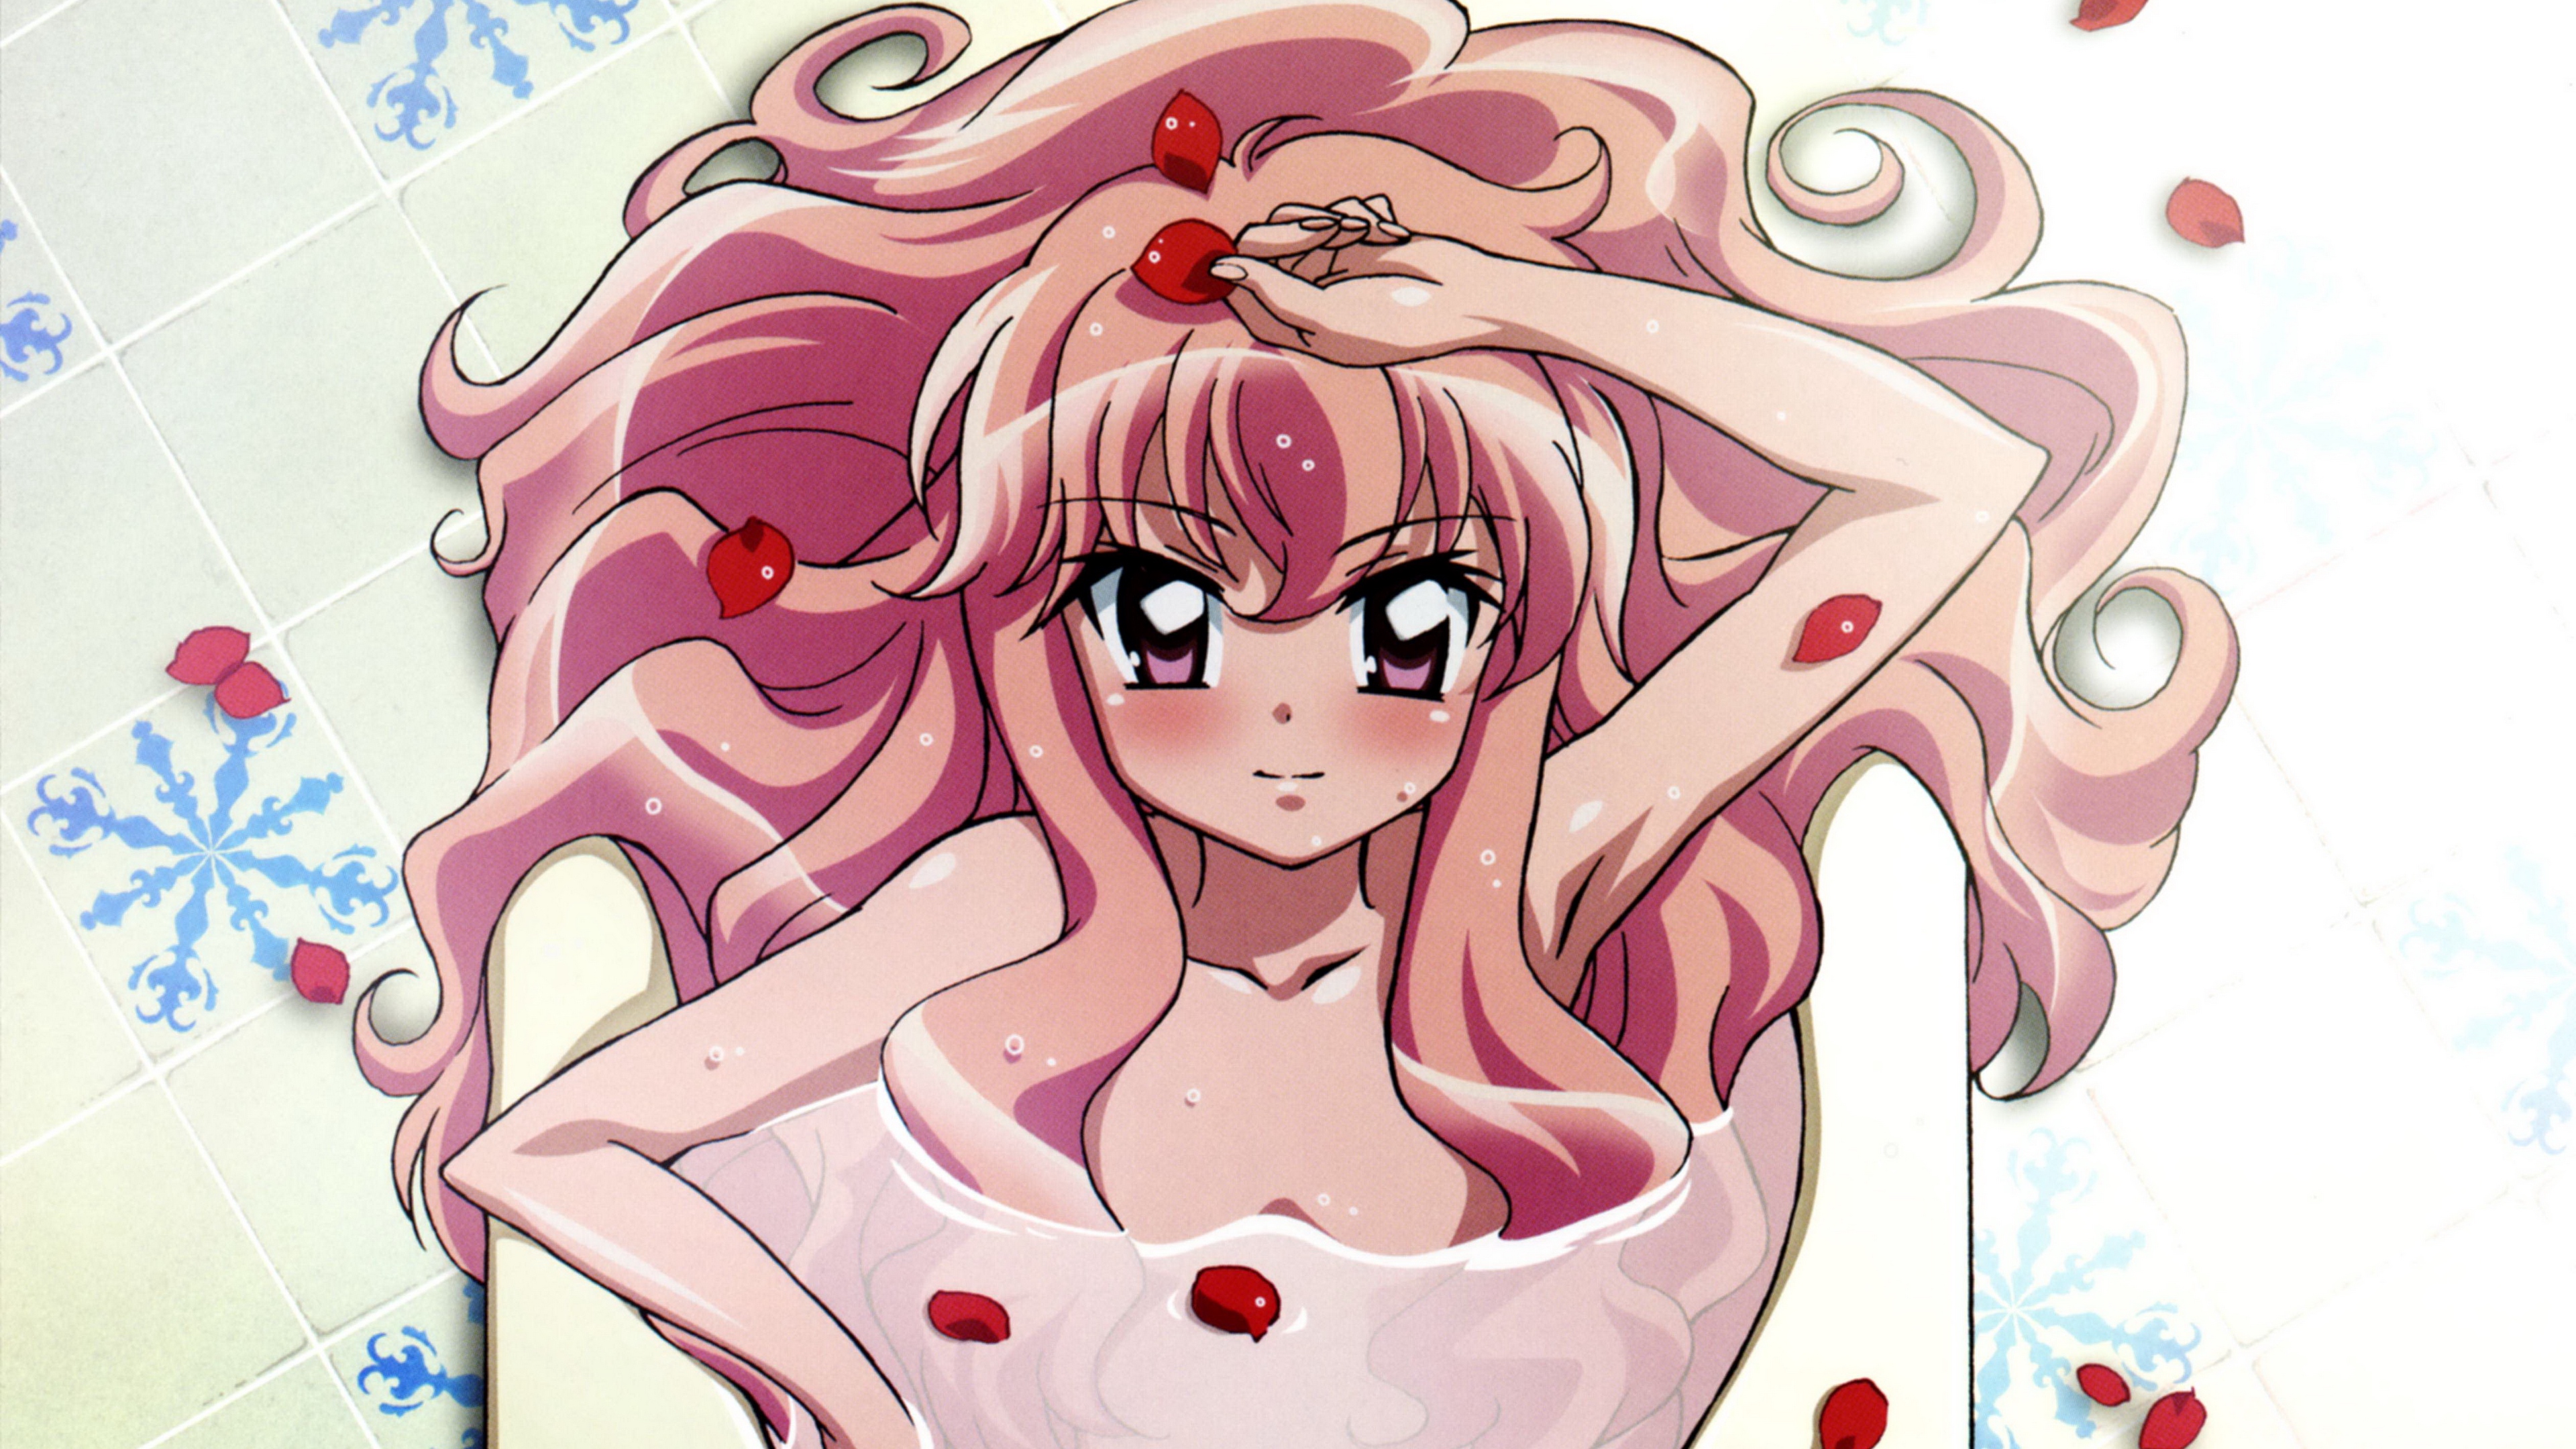 zero no tsukaima girl pink hair petals 4k 1541975556 - zero no tsukaima, girl, pink hair, petals 4k - zero no tsukaima, pink hair, Girl